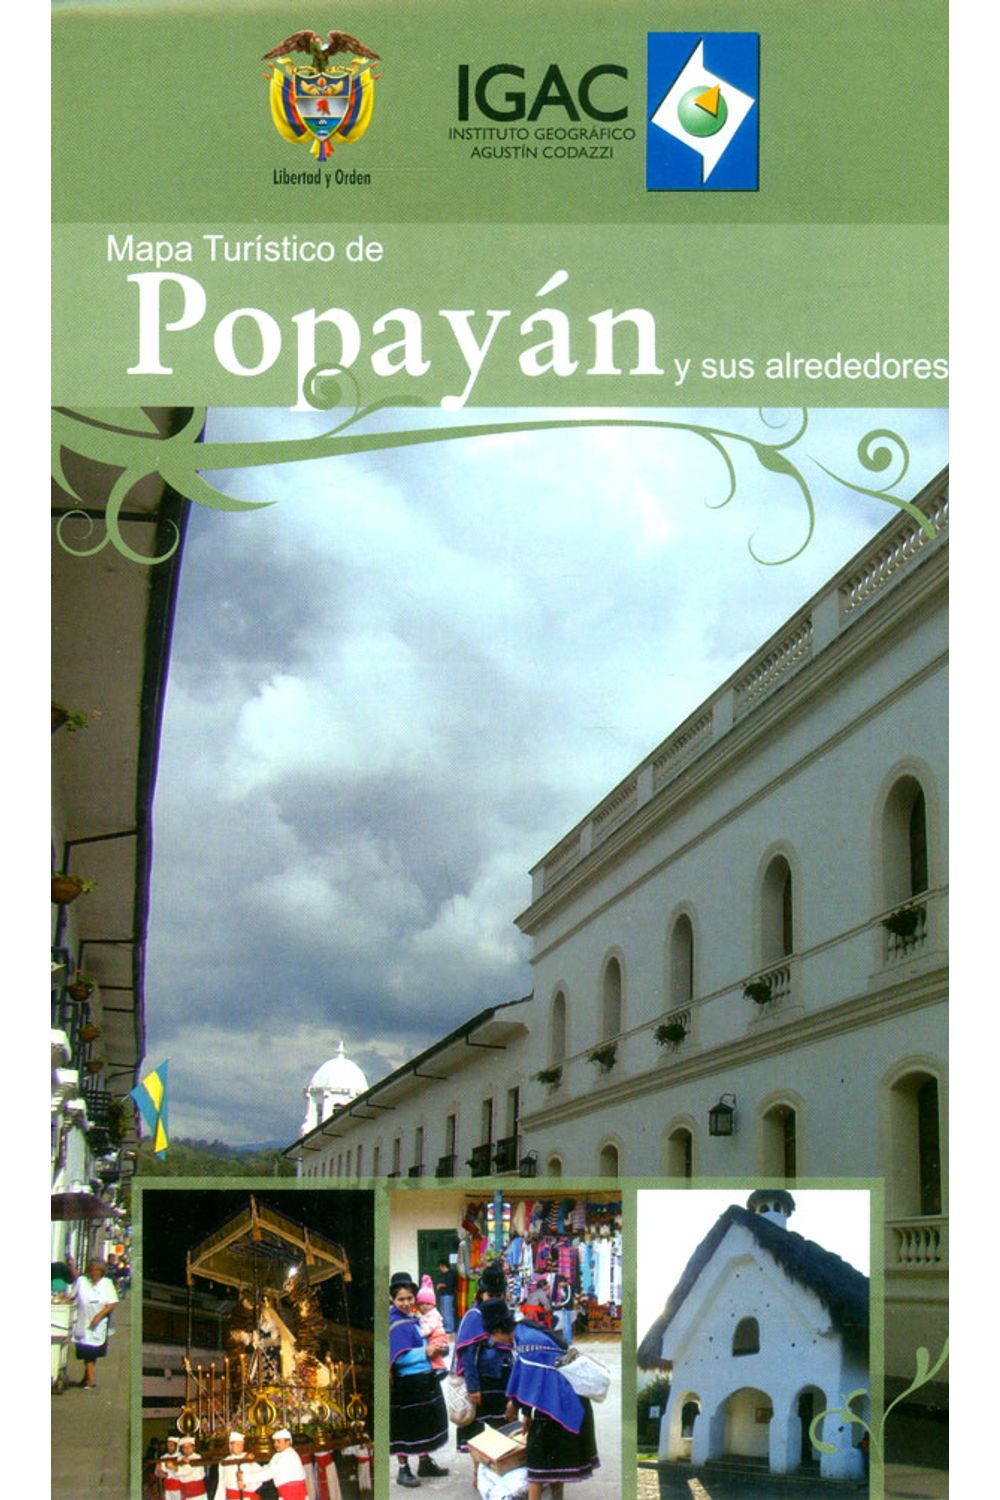 mapa-turistico-de-popayan-y-sus-alrededores-7703476002549-igac